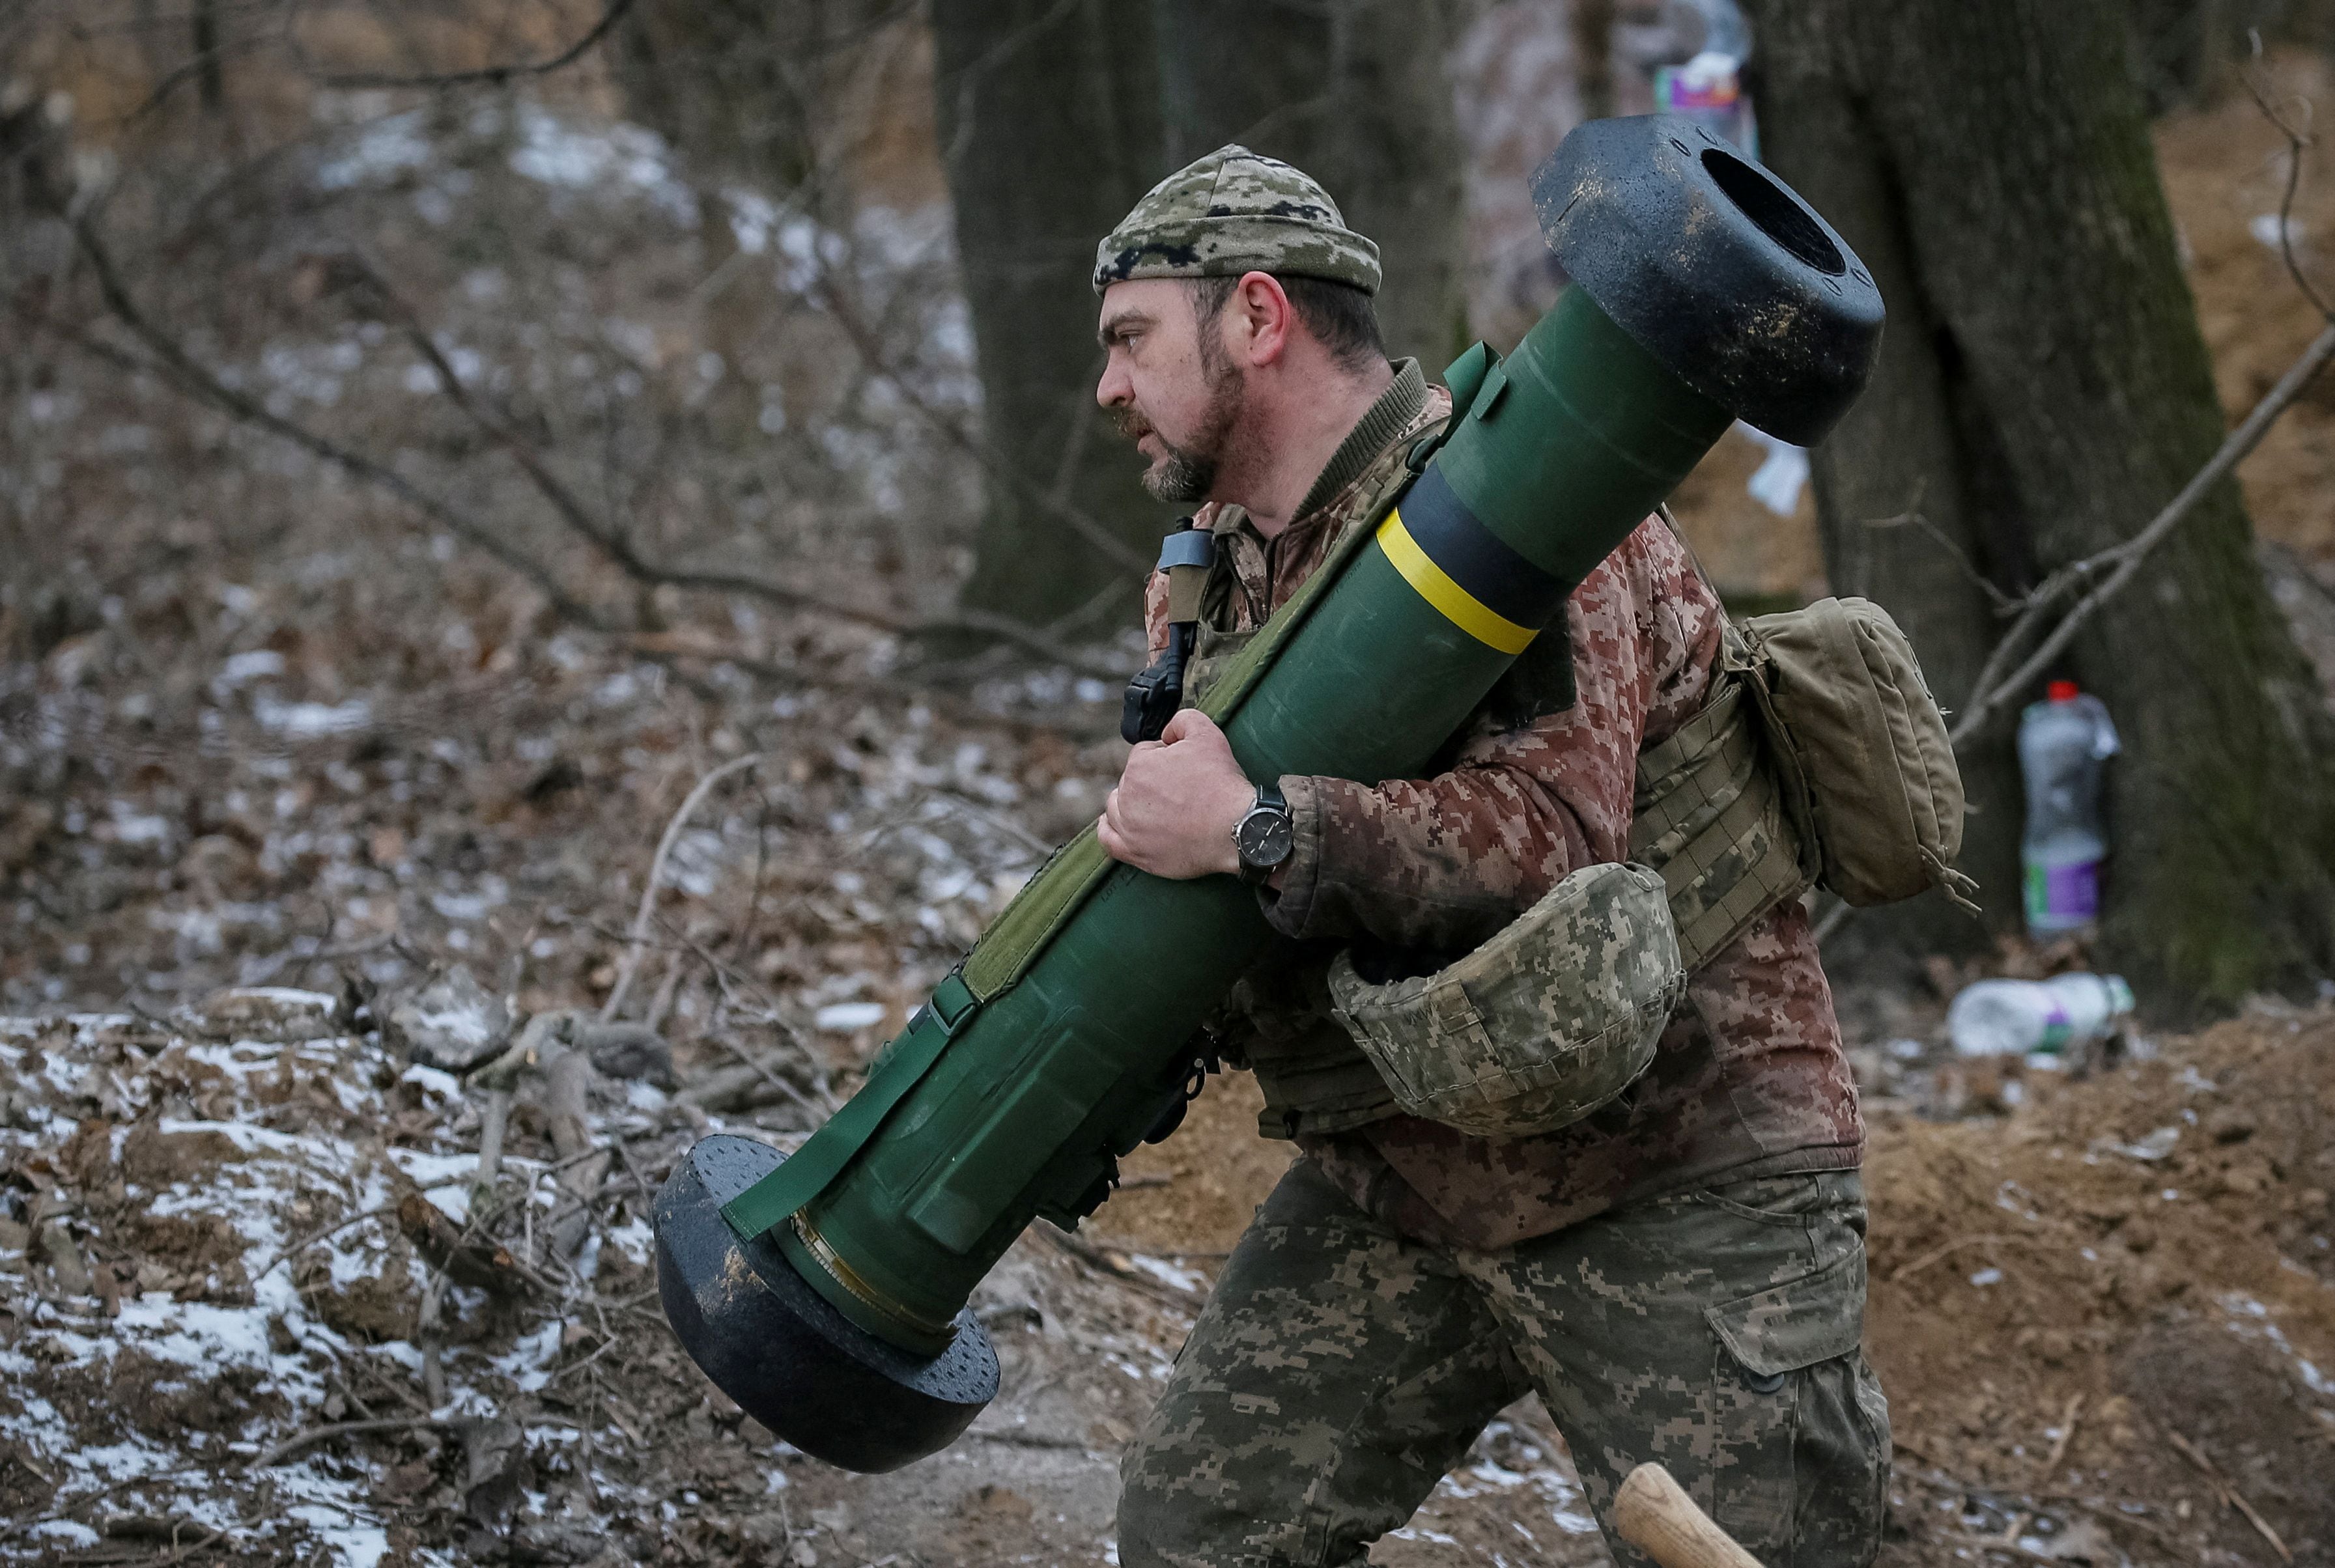 Un soldados del ejército ucraniano traslada uno de los sistemas móviles de lanzamisiles Javelin provistos por Gran Bretaña y otros países europeos y que fueron fundamentales para lograr el retroceso de las fuerzas rusas alrededor de Kyiv. REUTERS/Gleb Garanich.